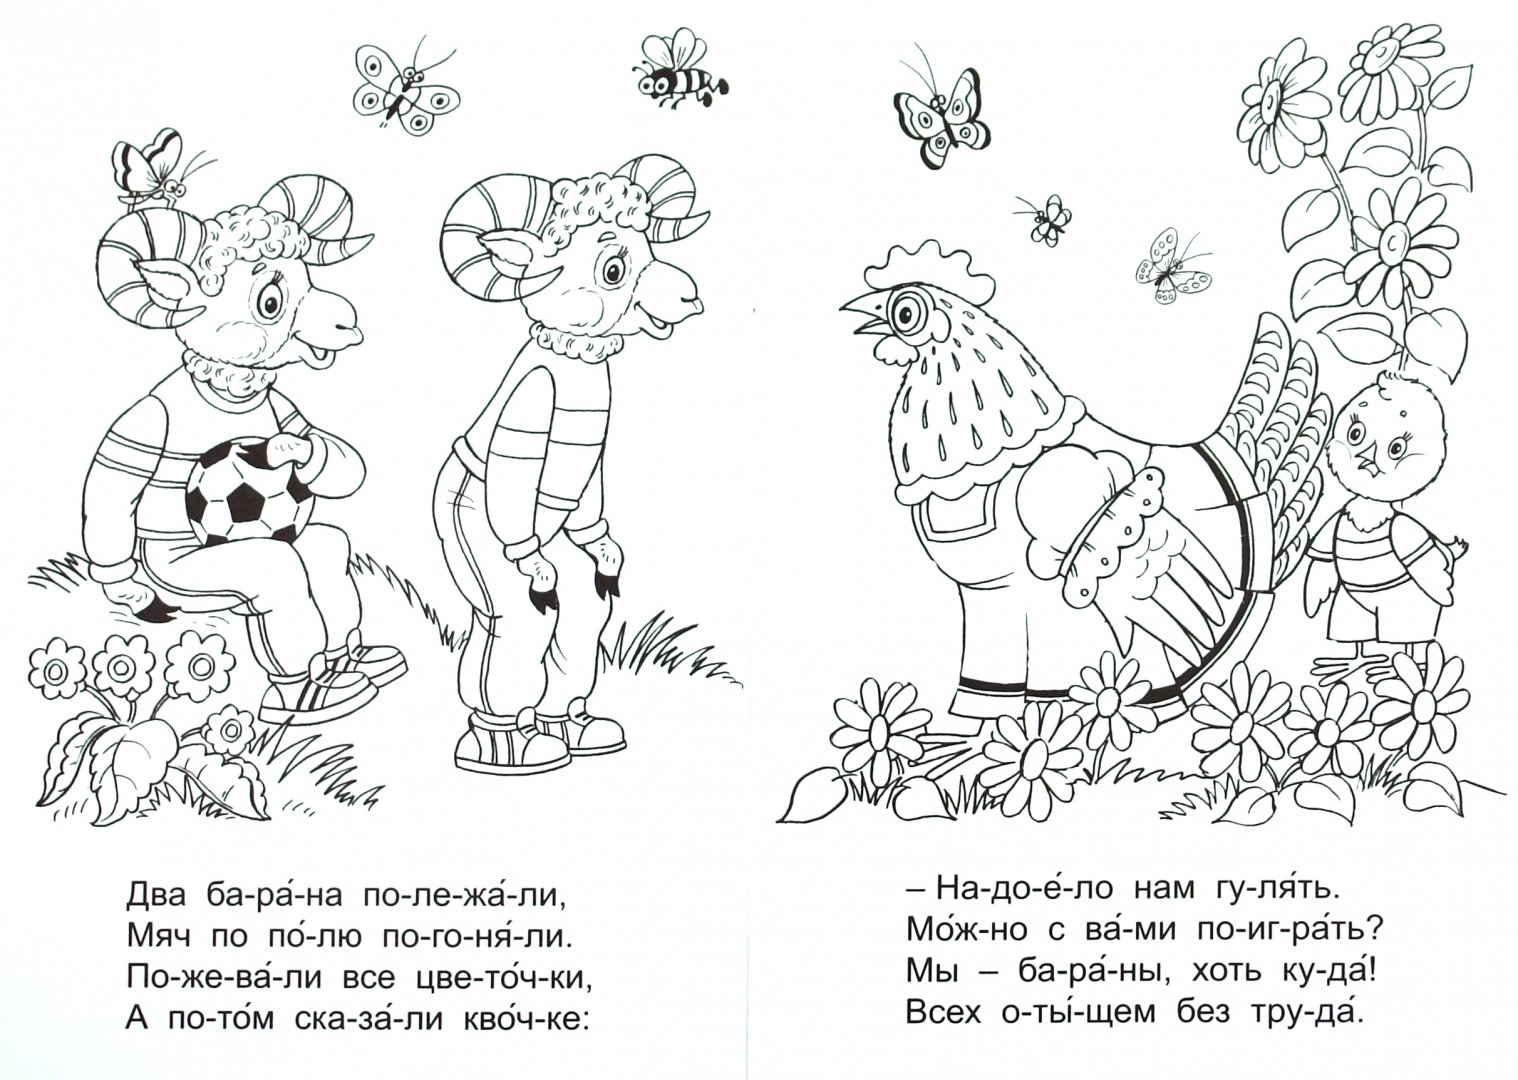 Иллюстрация 1 из 13 для Поиграем в прятки - Елена Михайленко | Лабиринт - книги. Источник: Лабиринт